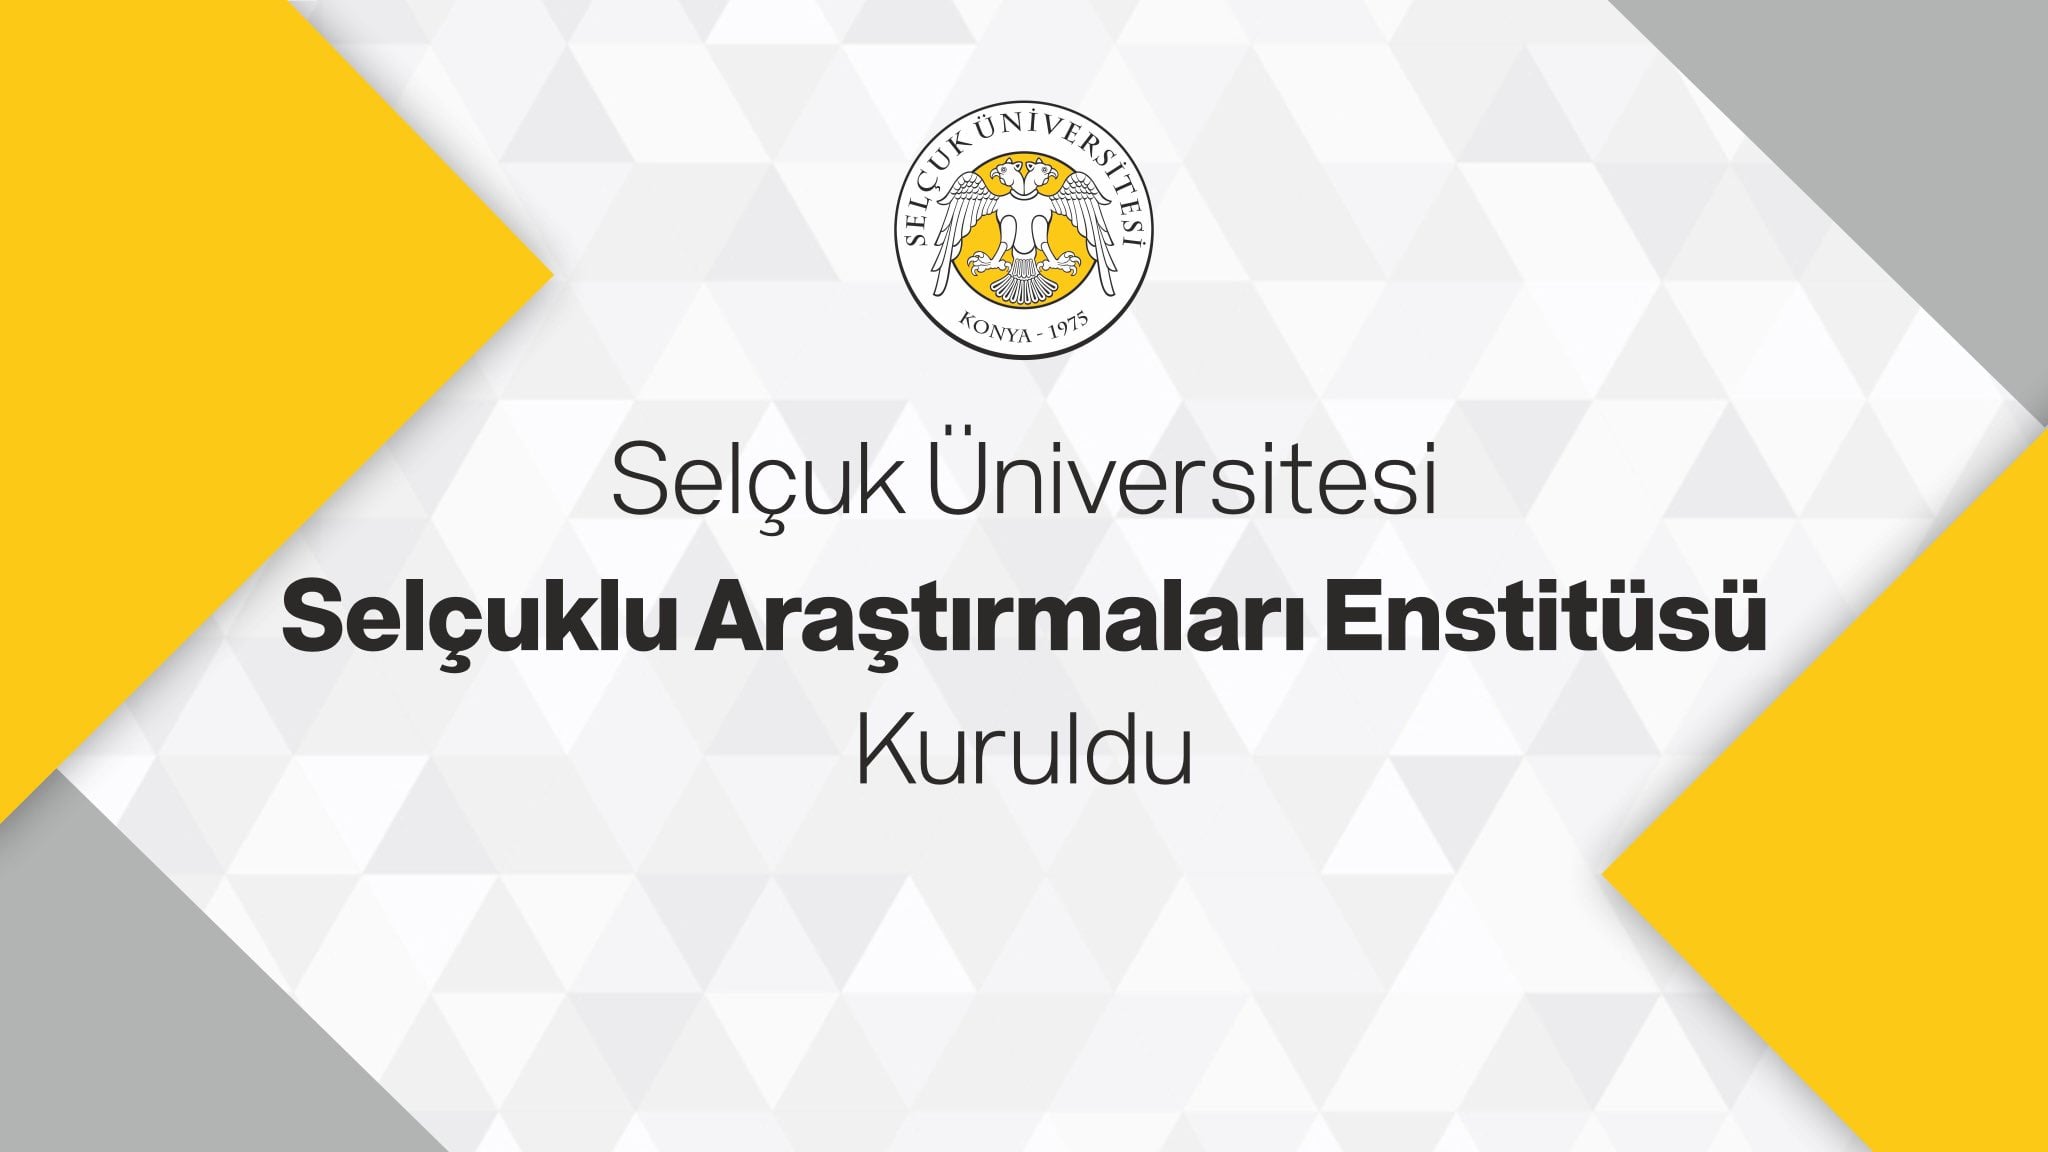 Selçuk Üniversitesi Selçuklu Araştırmaları Enstitüsü Kuruldu 